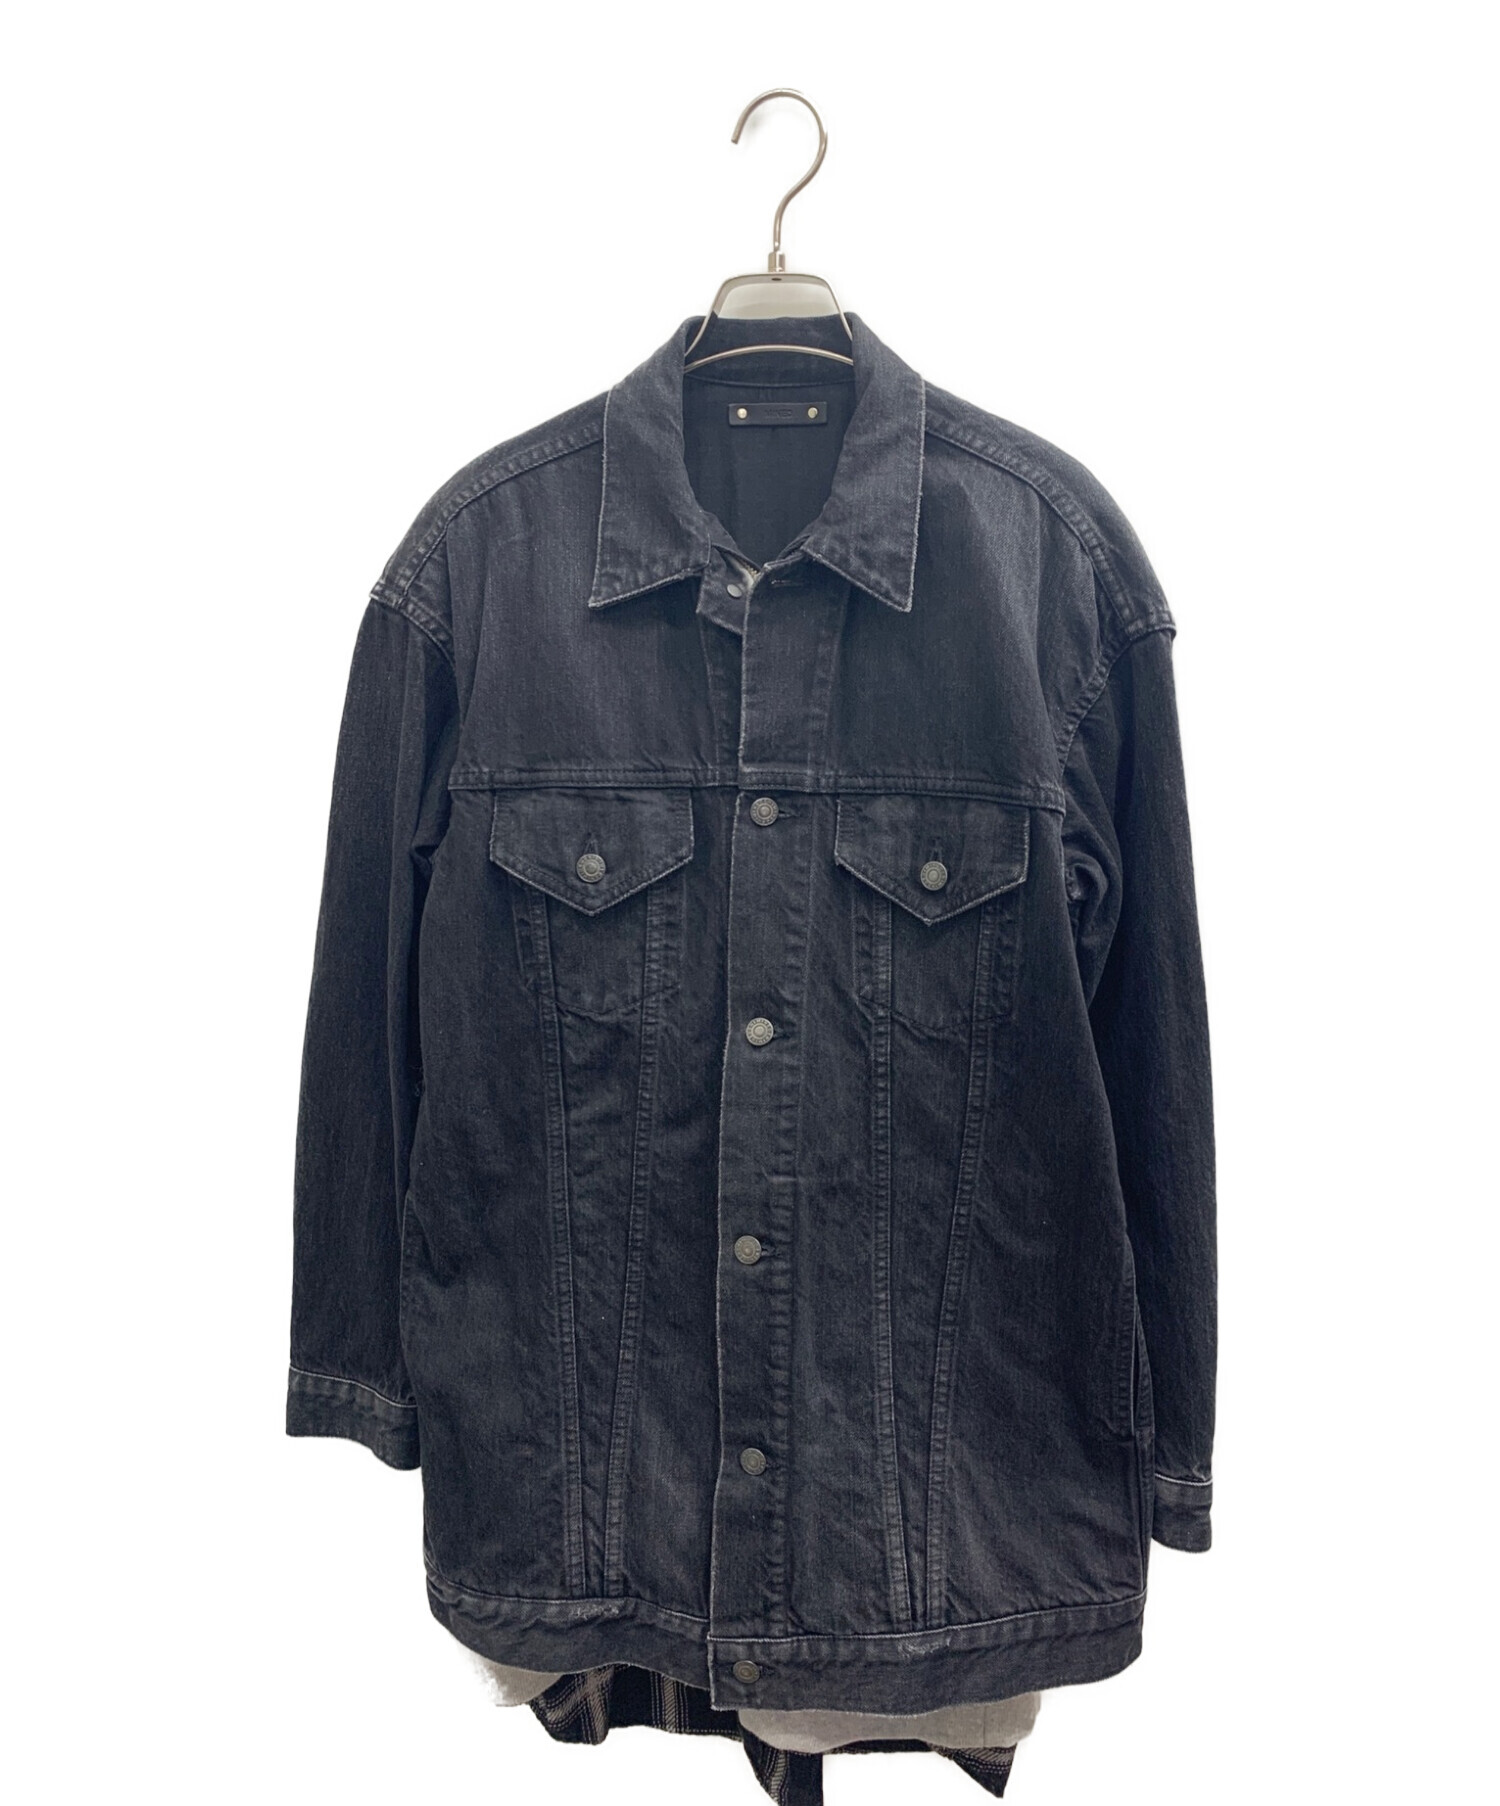 MINEDENIM (マインデニム) レイヤードデニムジャケット ブラック サイズ:1